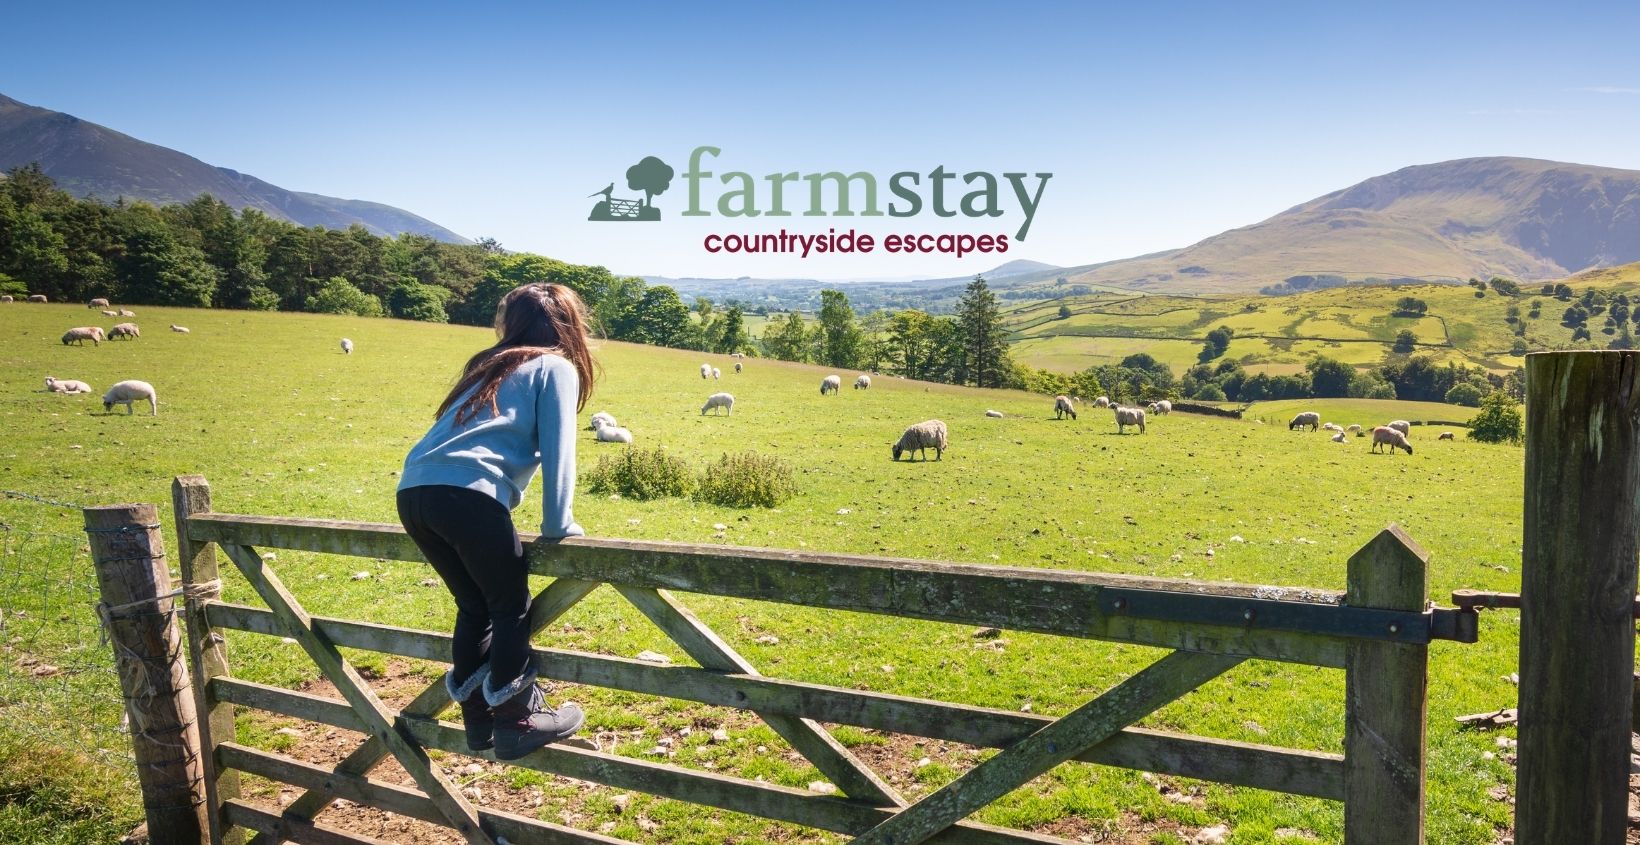 www.farmstay.co.uk